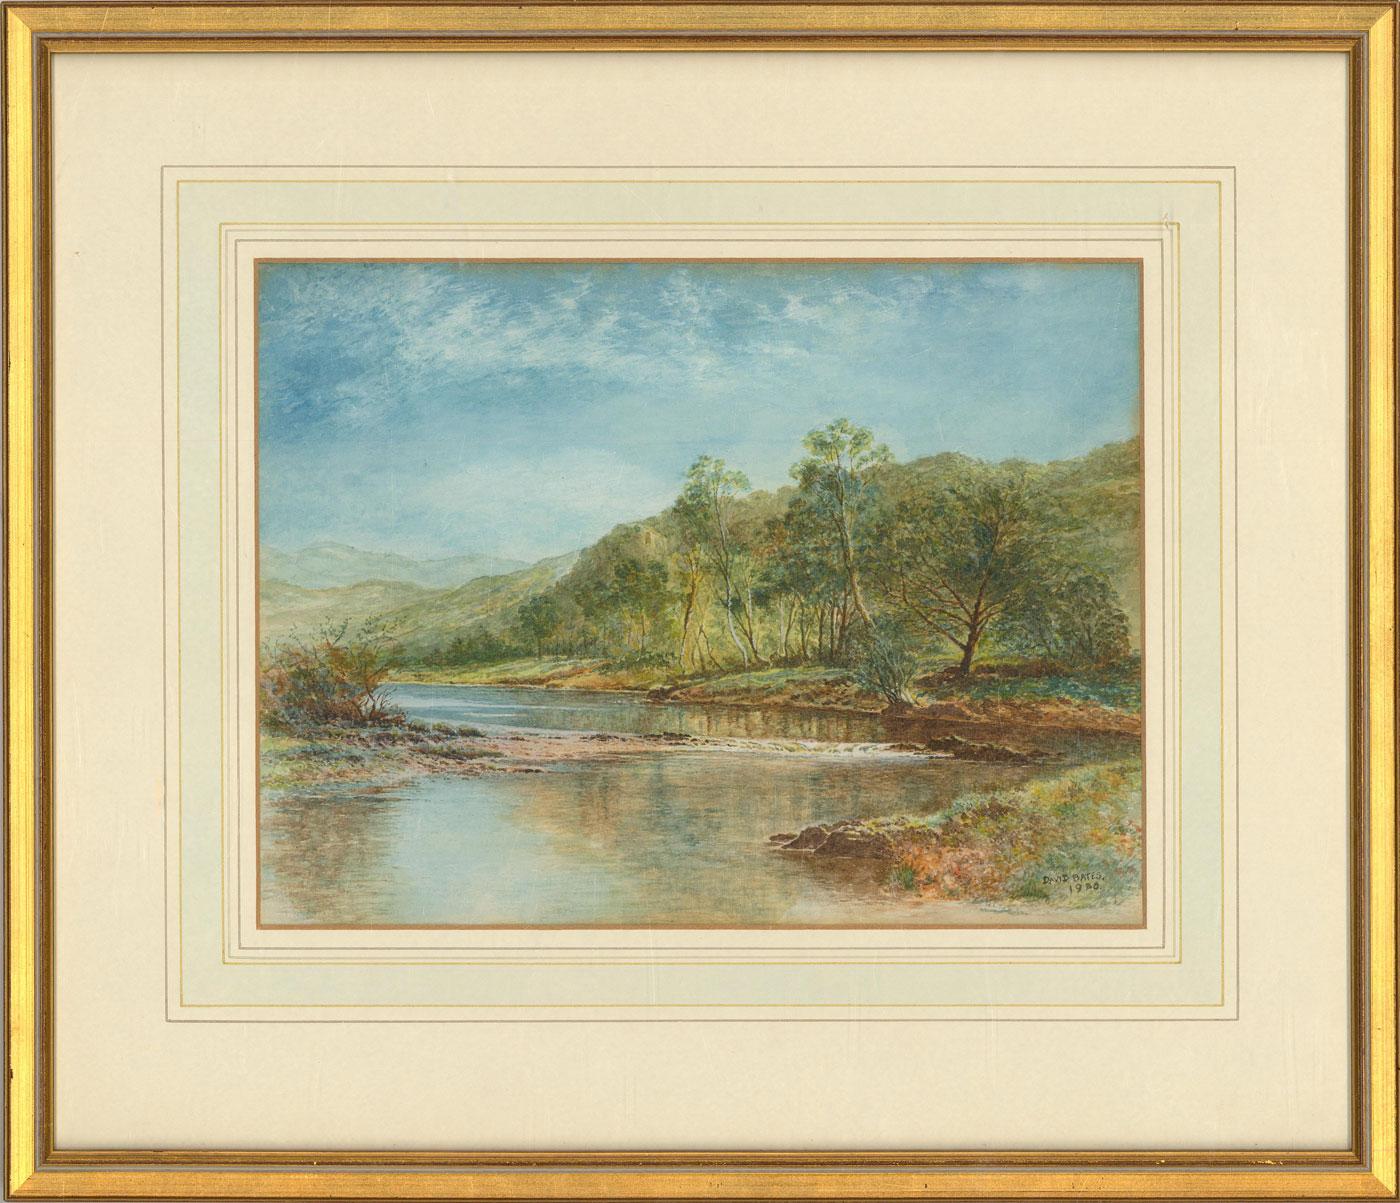 Unknown Landscape Art - David Bates - Framed 1980 Watercolour, River Landscape